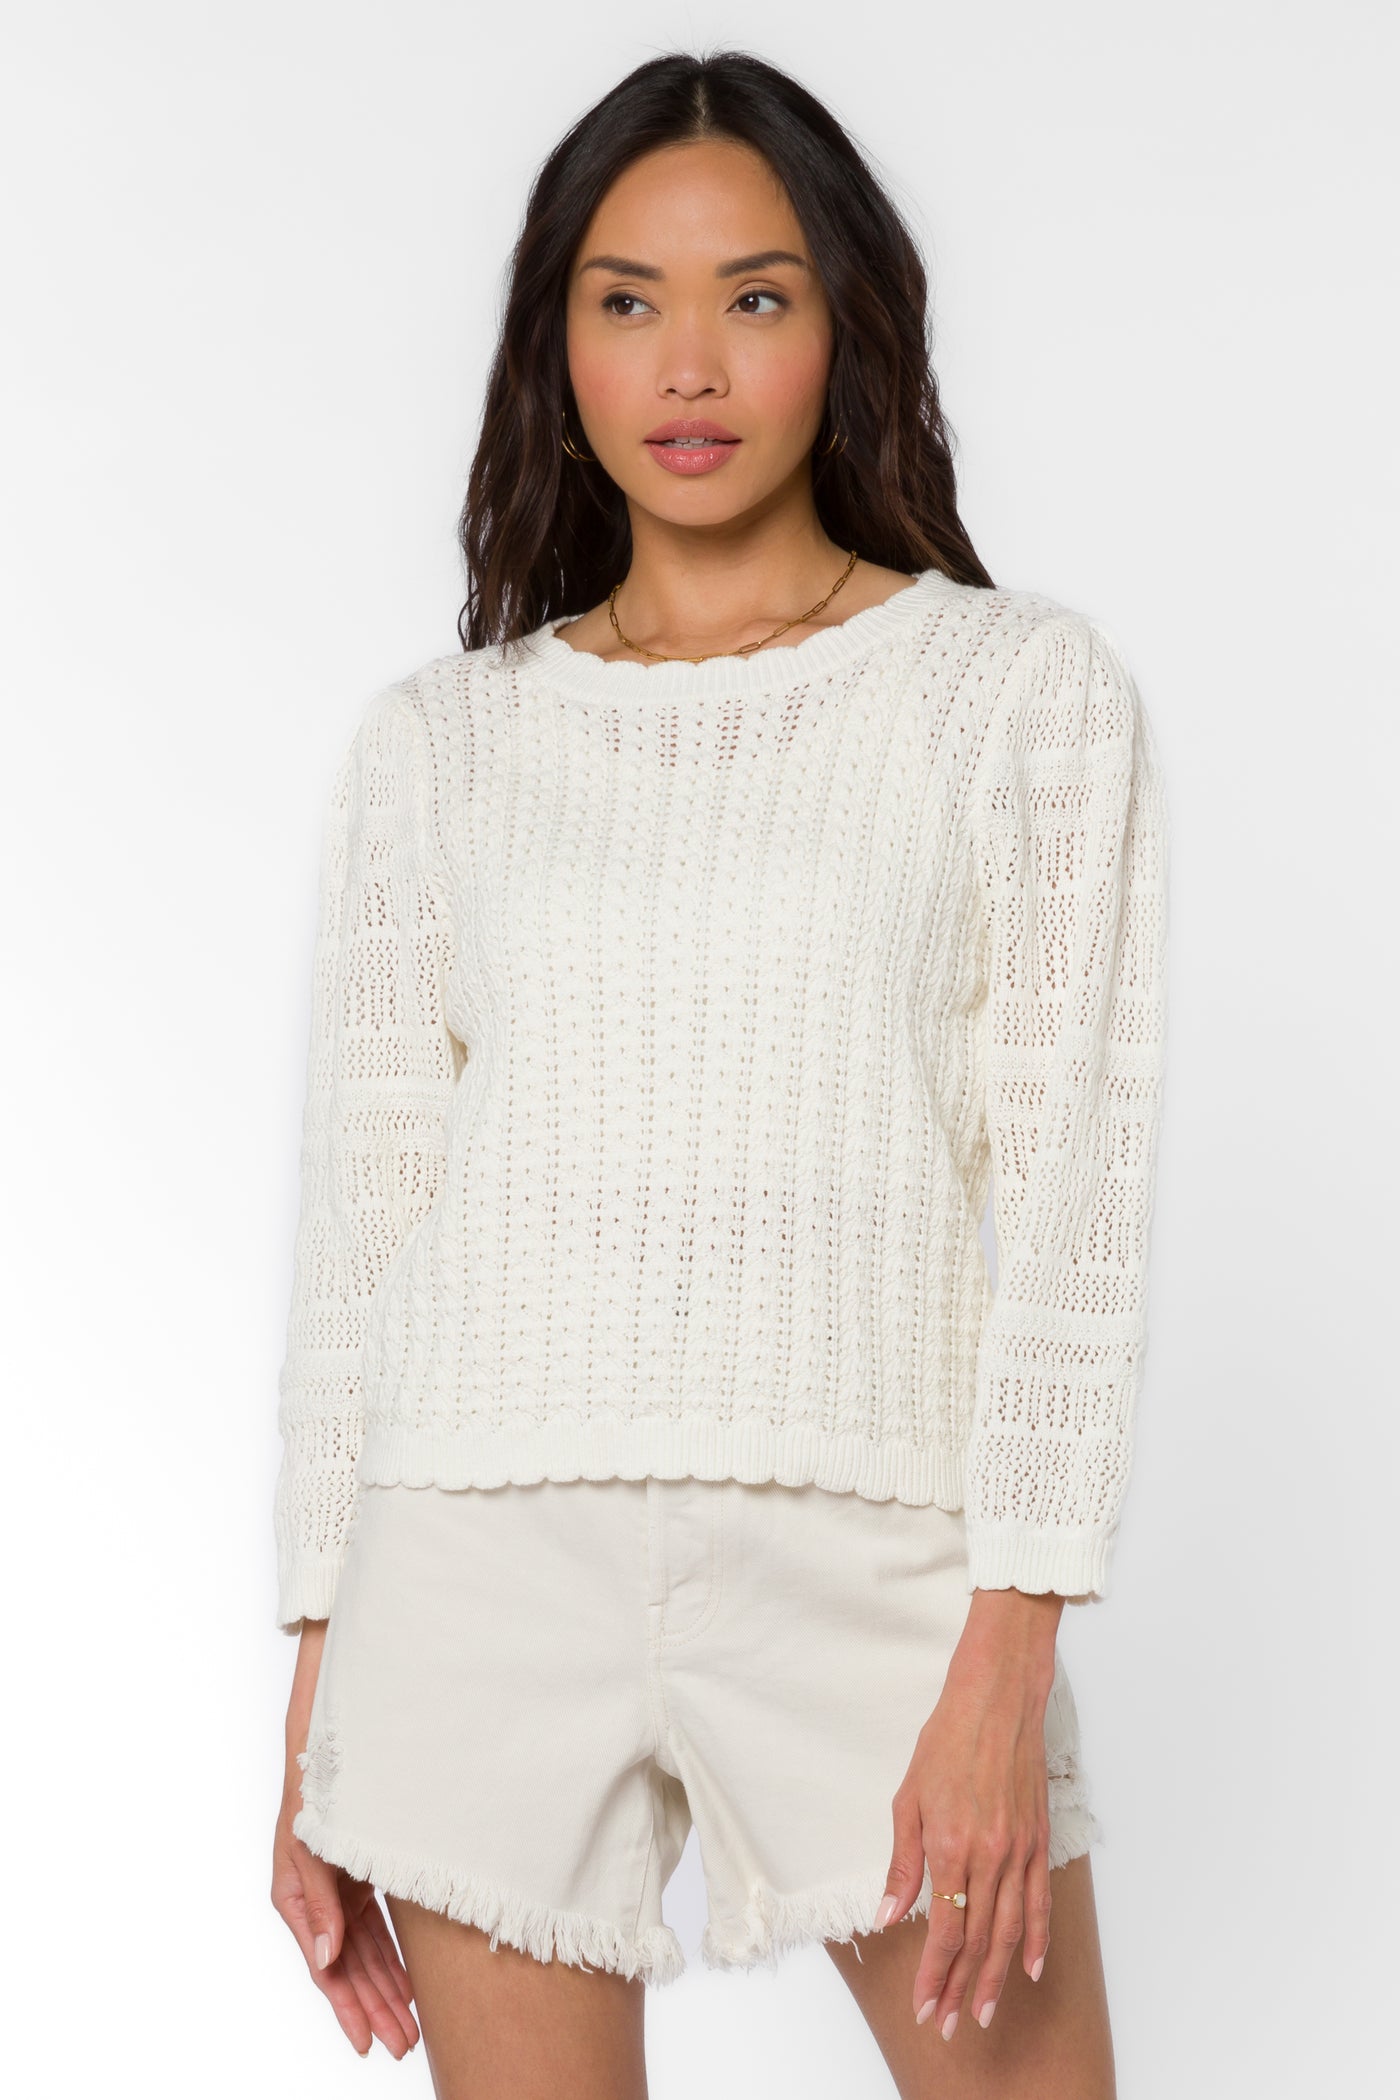 Gazelle White Sweater - Sweaters - Velvet Heart Clothing